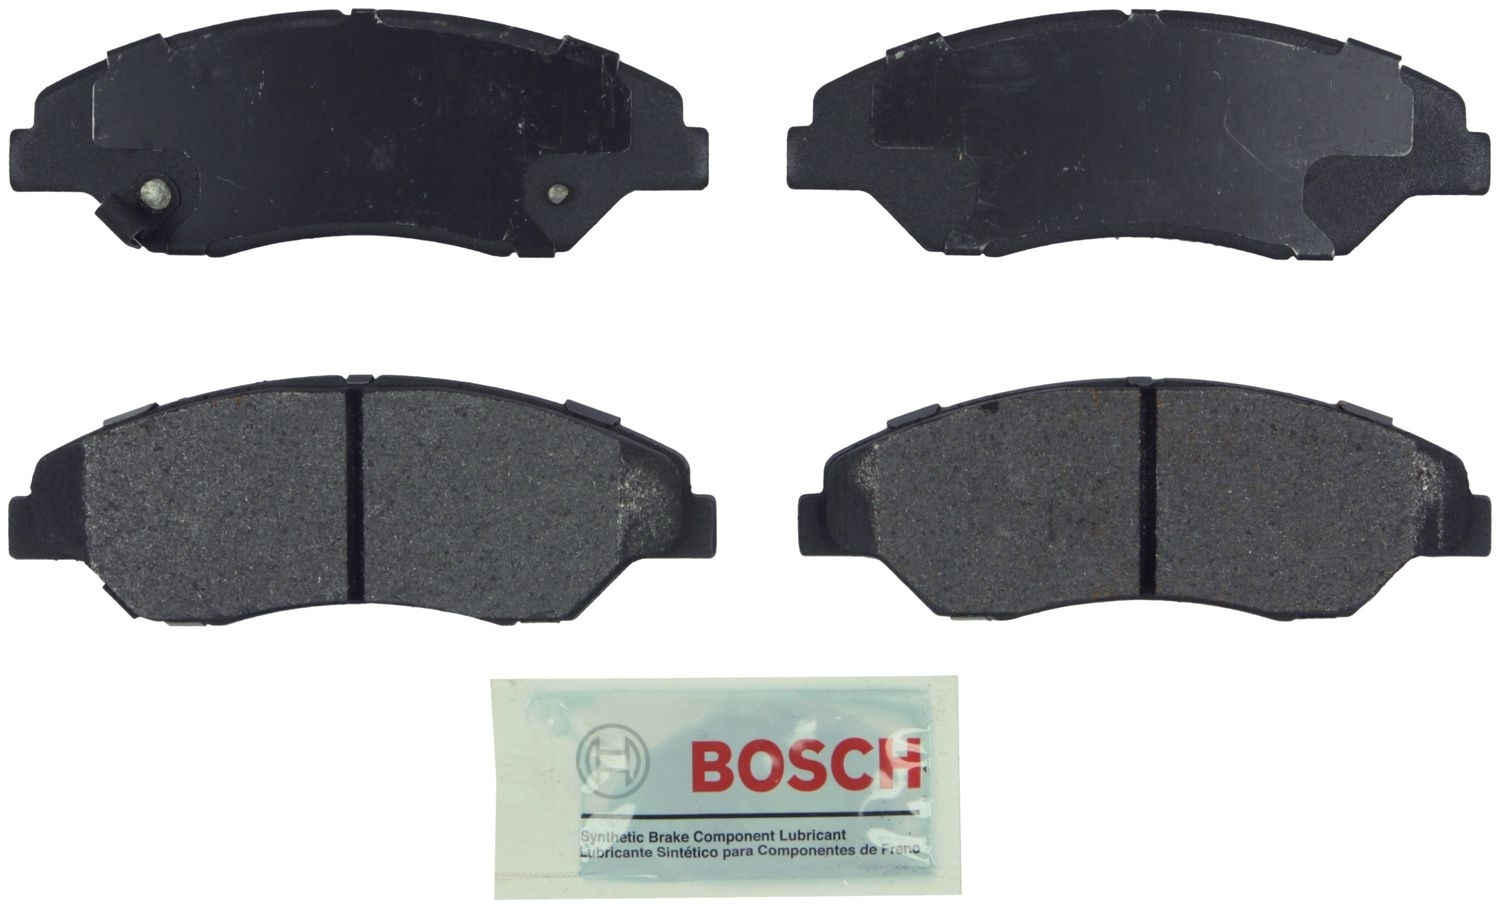 BOSCH BRAKE - Bosch Blue Ceramic Brake Pads (Front) - BQC BE774